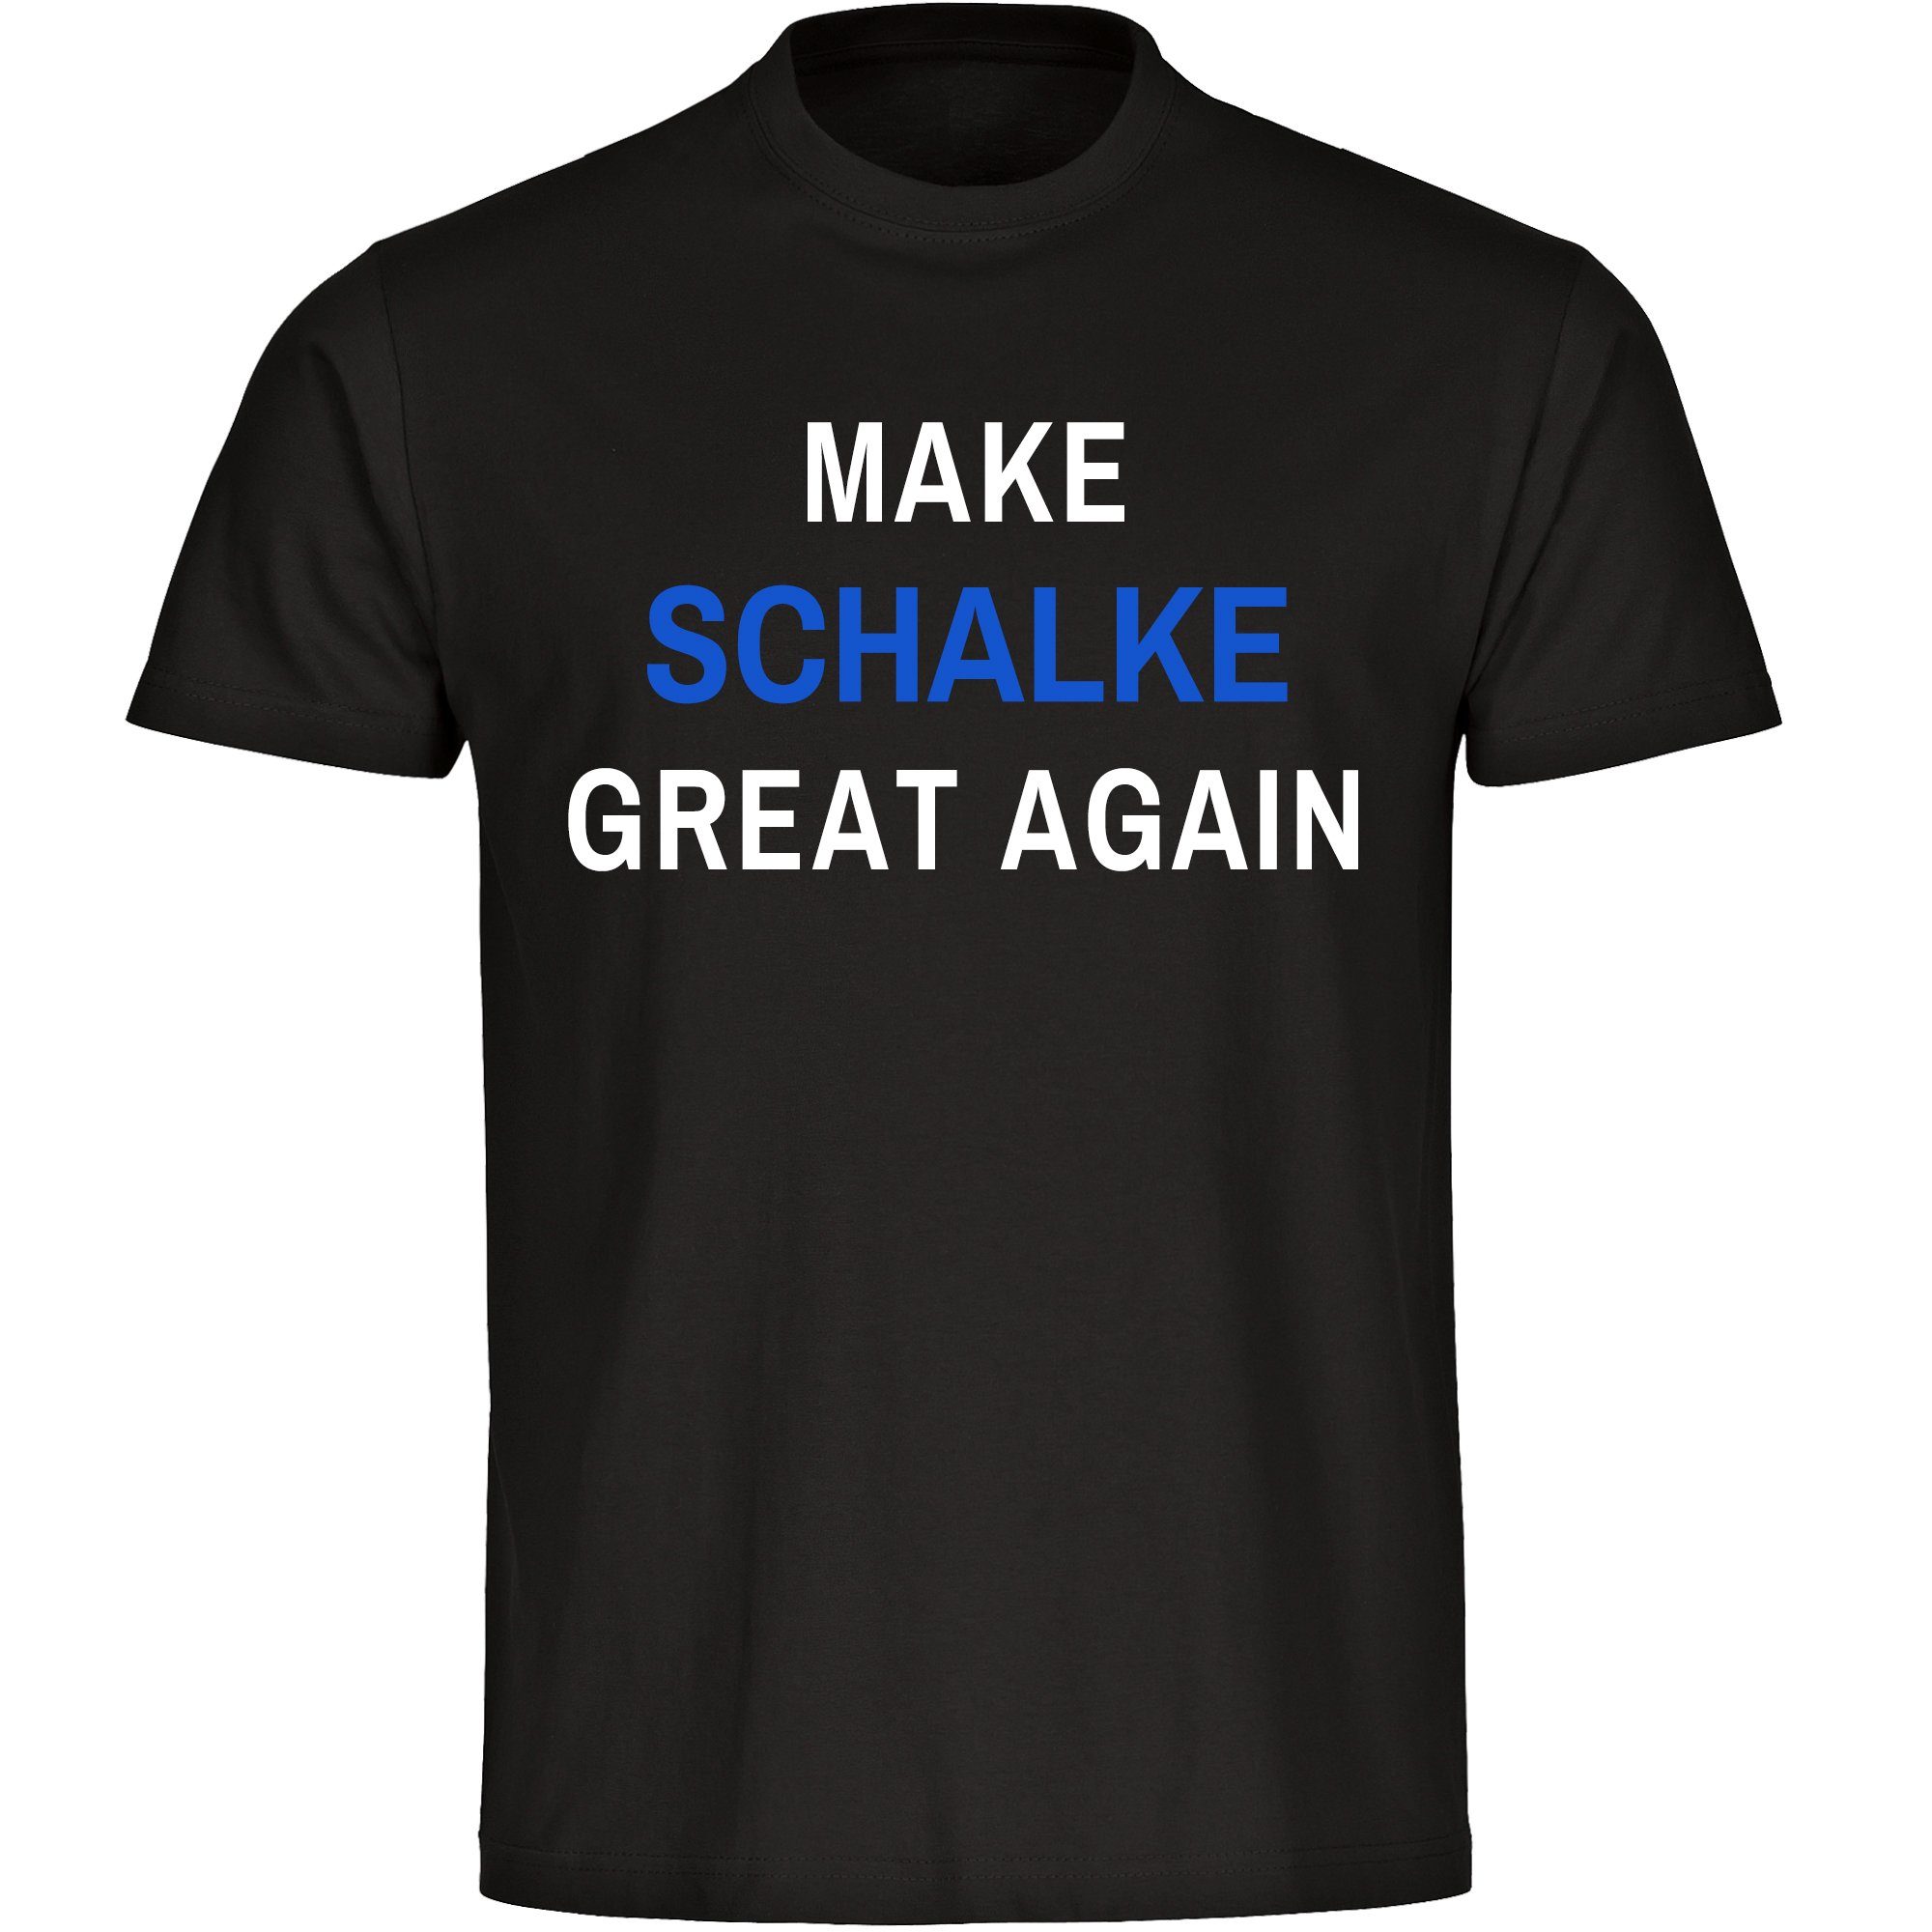 multifanshop T-Shirt Kinder Schalke - Make Great Again - Jungen Mädchen Shirt Fanartikel